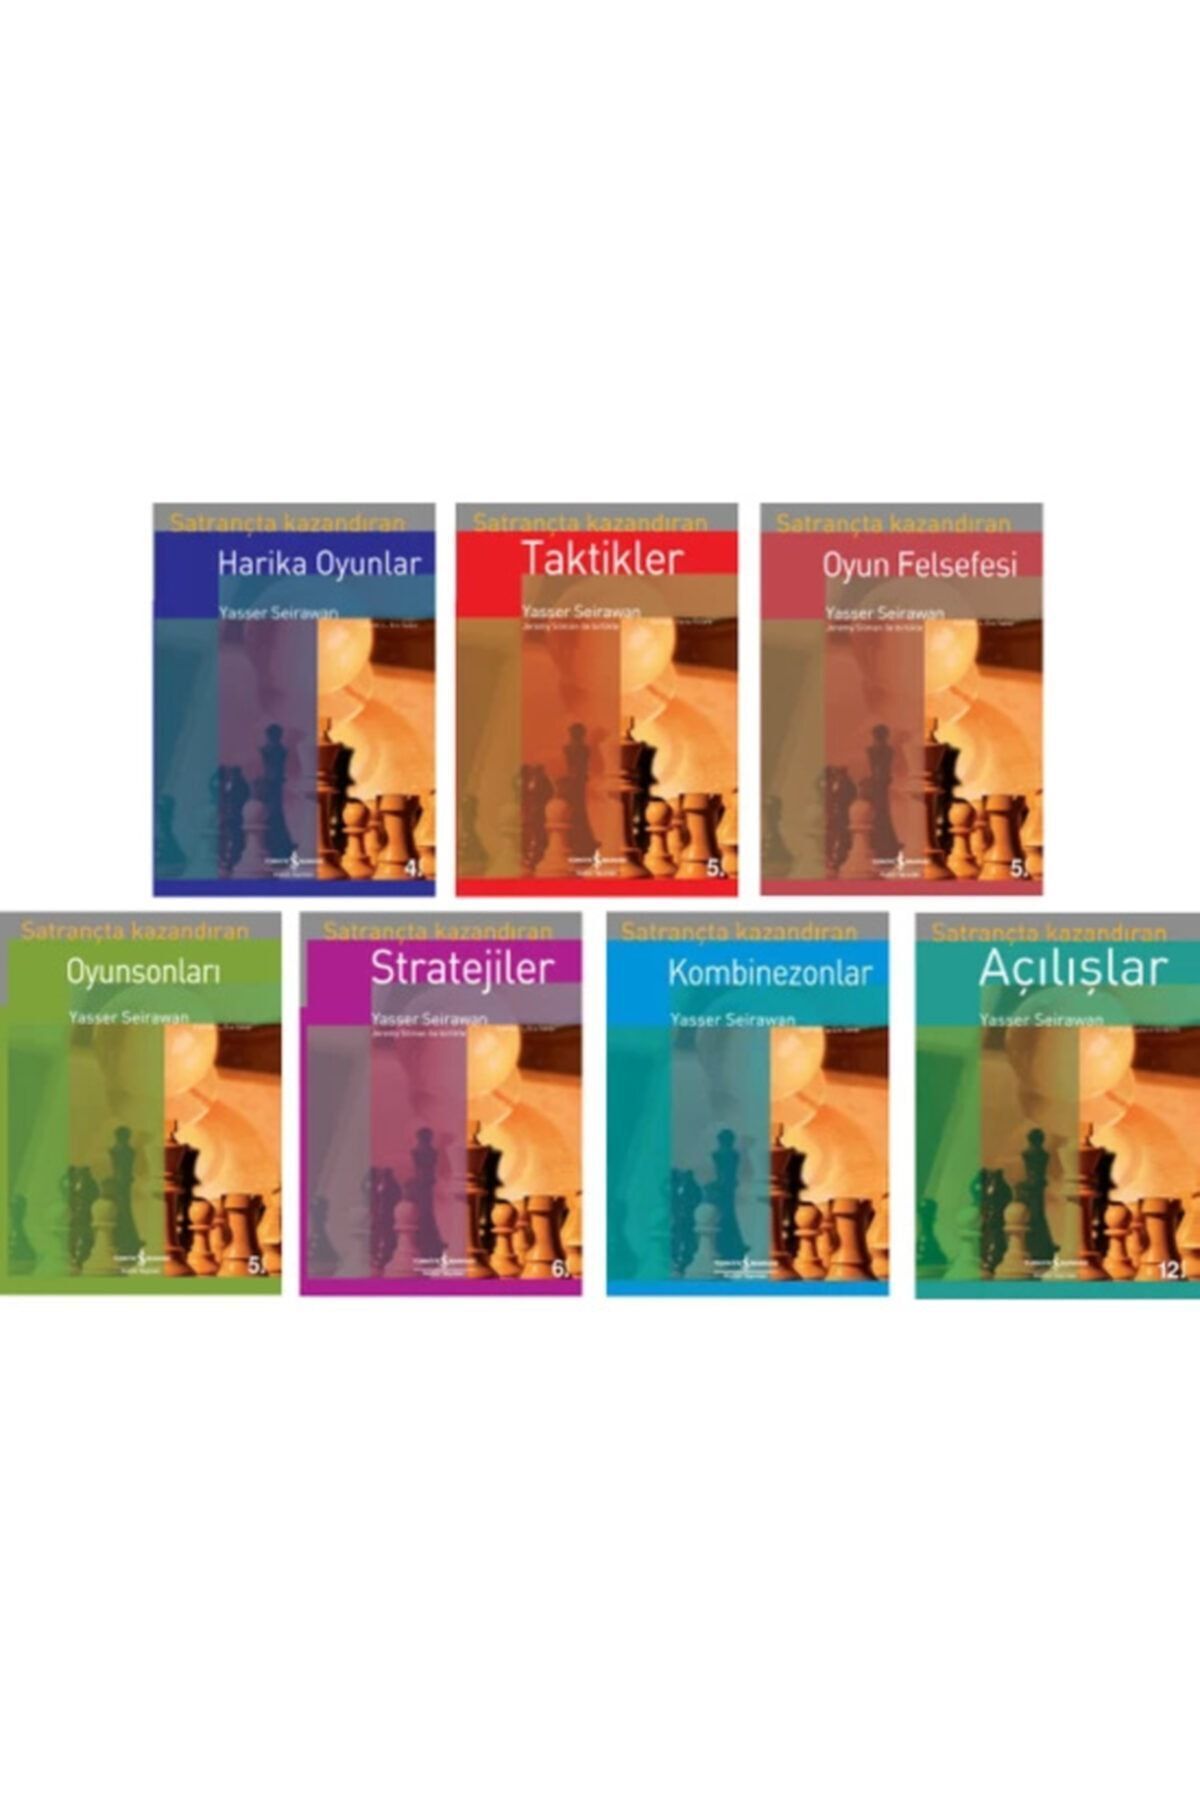 Türkiye İş Bankası Kültür Yayınları Satrançta Kazandıran Serisi 7 Kitap Set Satranç Kitapları - Harika Oyunlar - Oyunsonları - Açılışlar